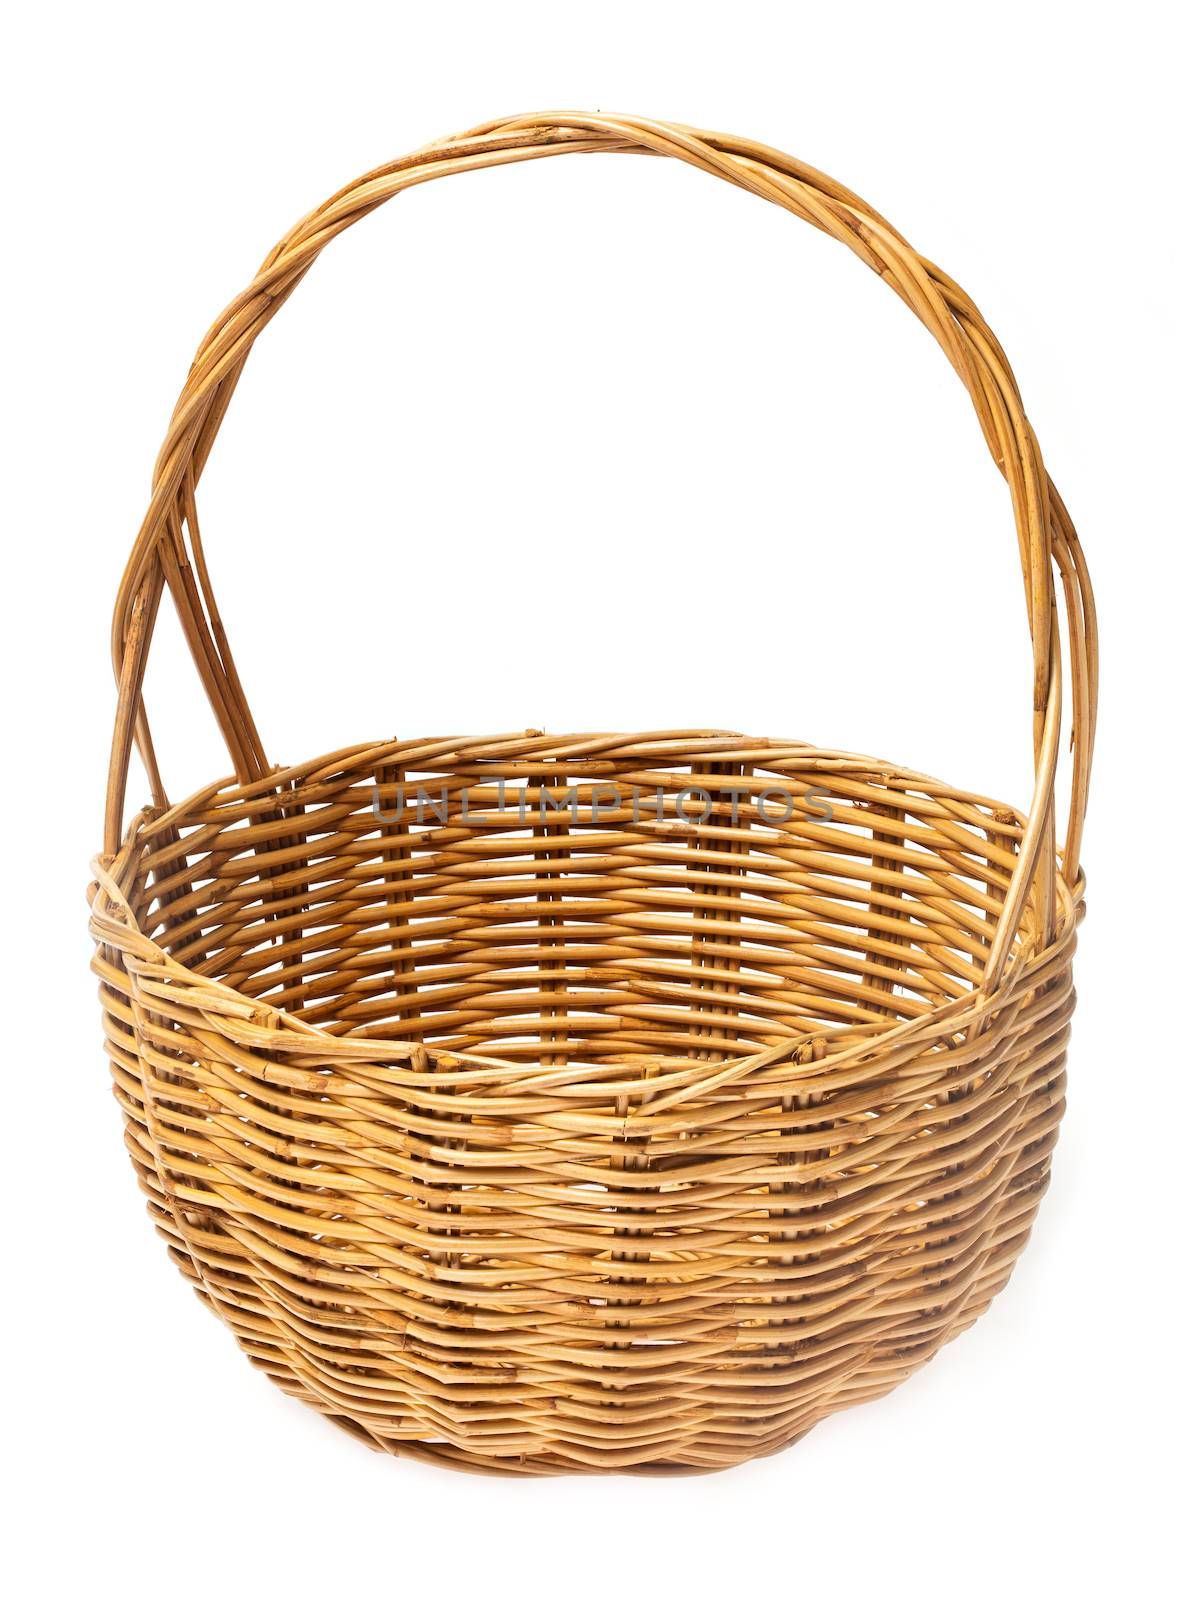 Wicker basket by smuay